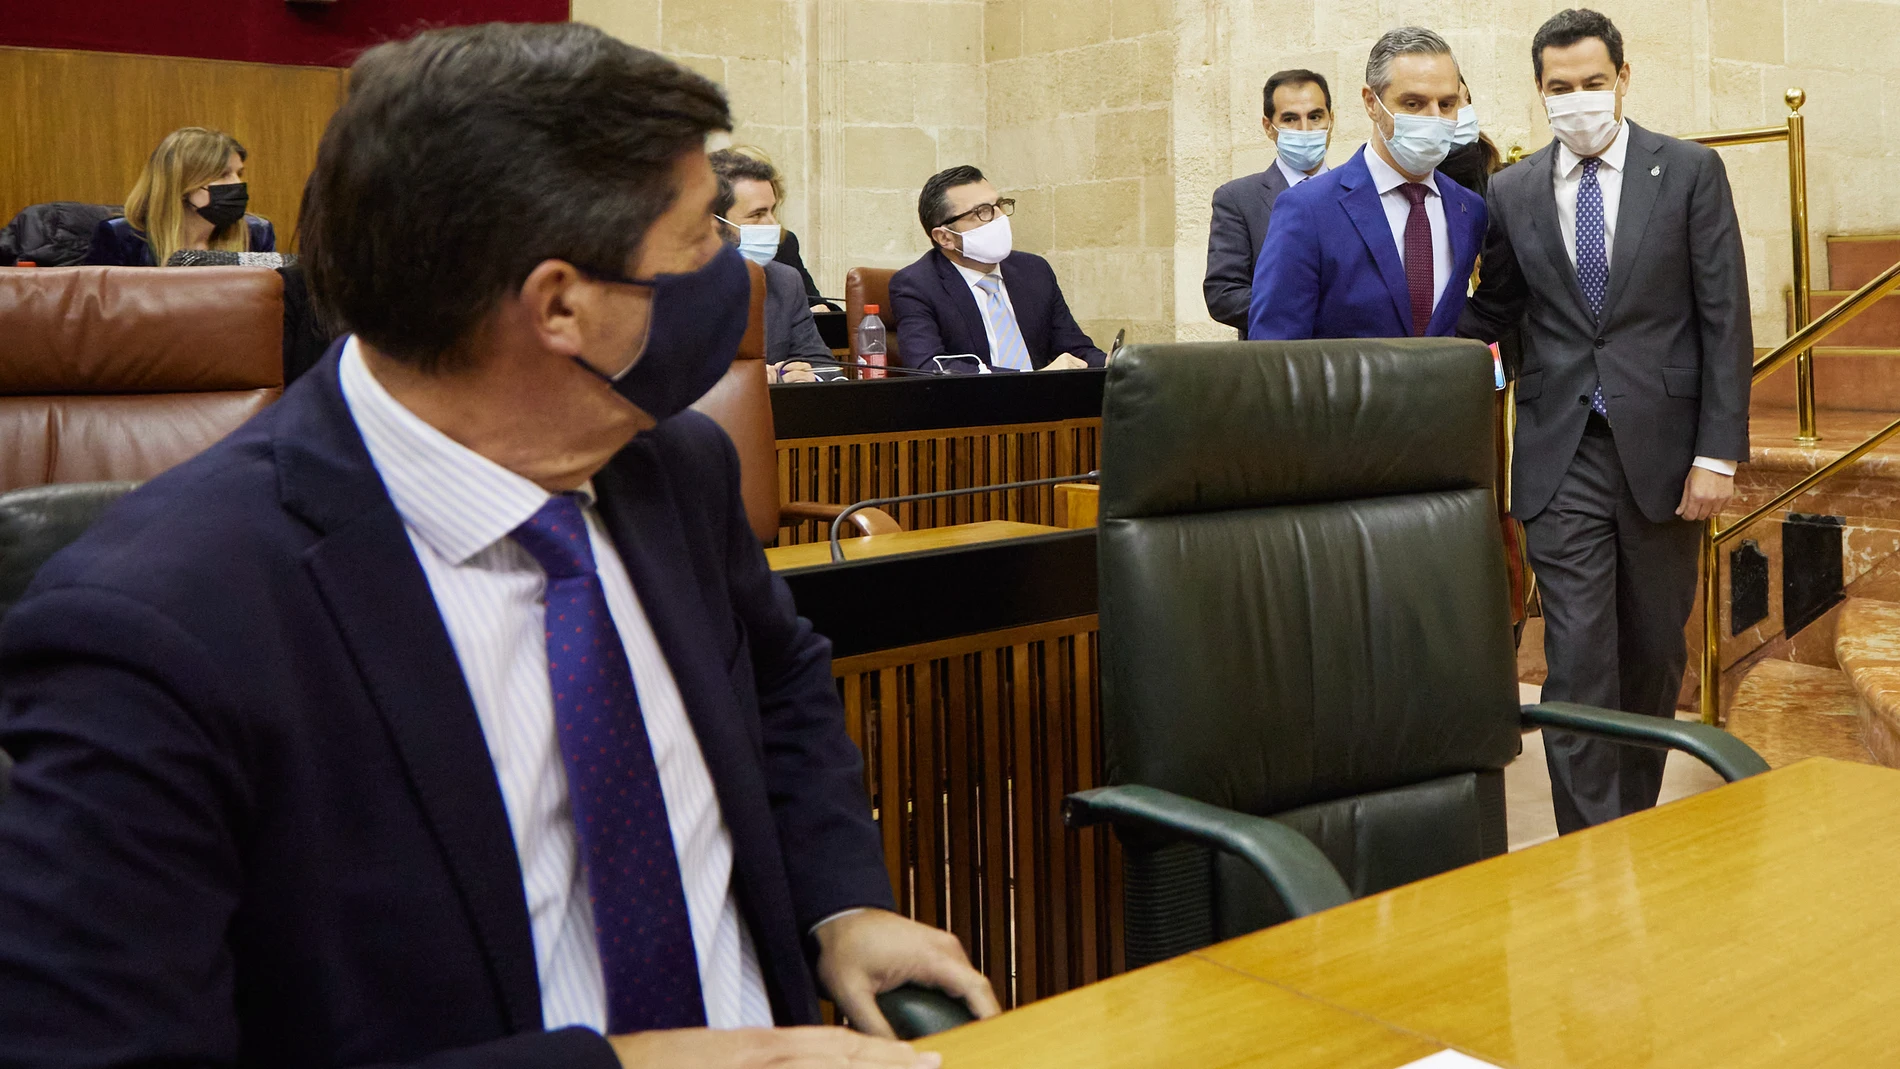 El vicepresidente de la Junta de Andalucía, Juan Marín, (i) espera la llegada del consejero de Hacienda y Financiación Europea, Juan Bravo (2d) y el presidente de la Junta de Andalucía, Juanma Moreno, (d) durante el Debate de Presupuesto de la Junta de Andalucía. Joaquín Corchero / Europa Press